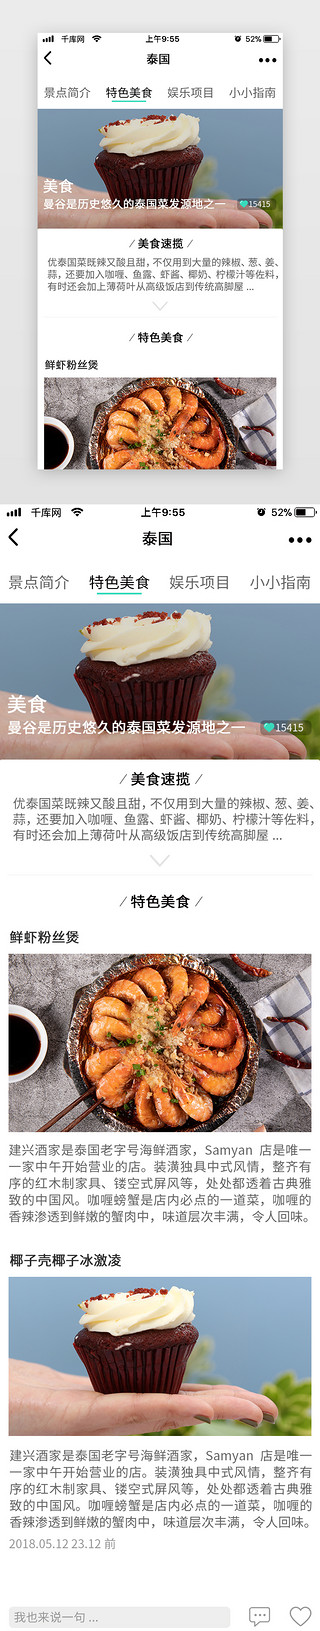 美食详情页uiUI设计素材_旅游APP美食详情页